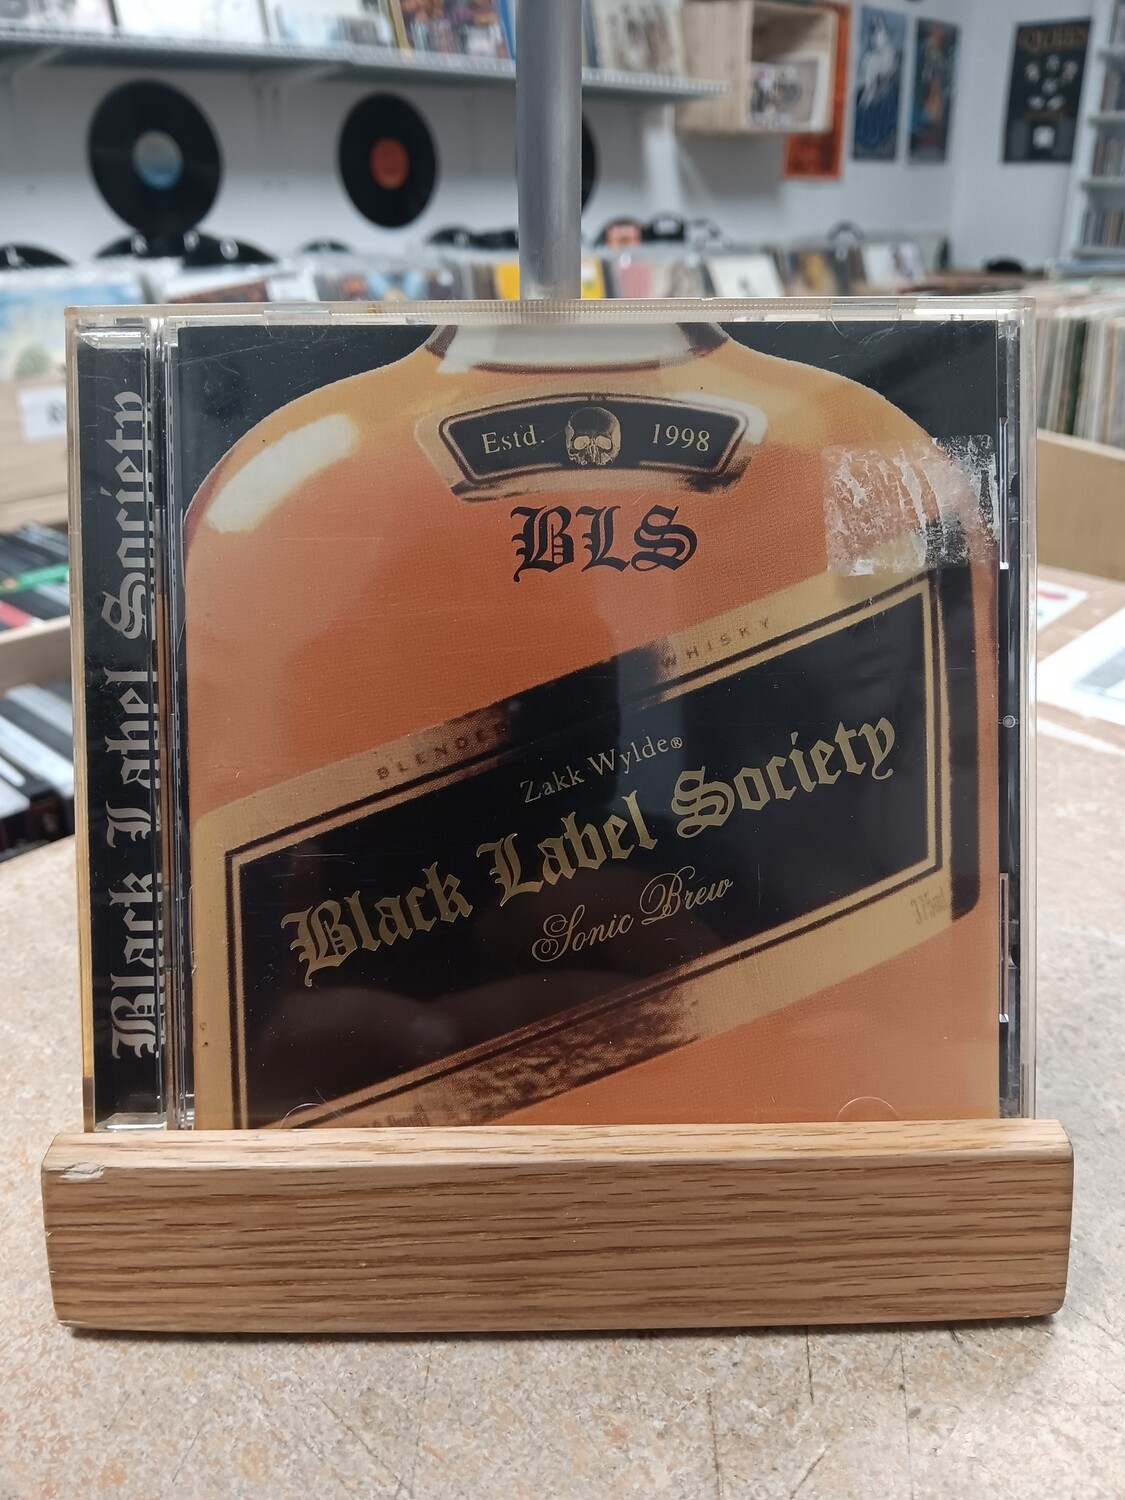 Black Label Society - Sonic Brew (CD)